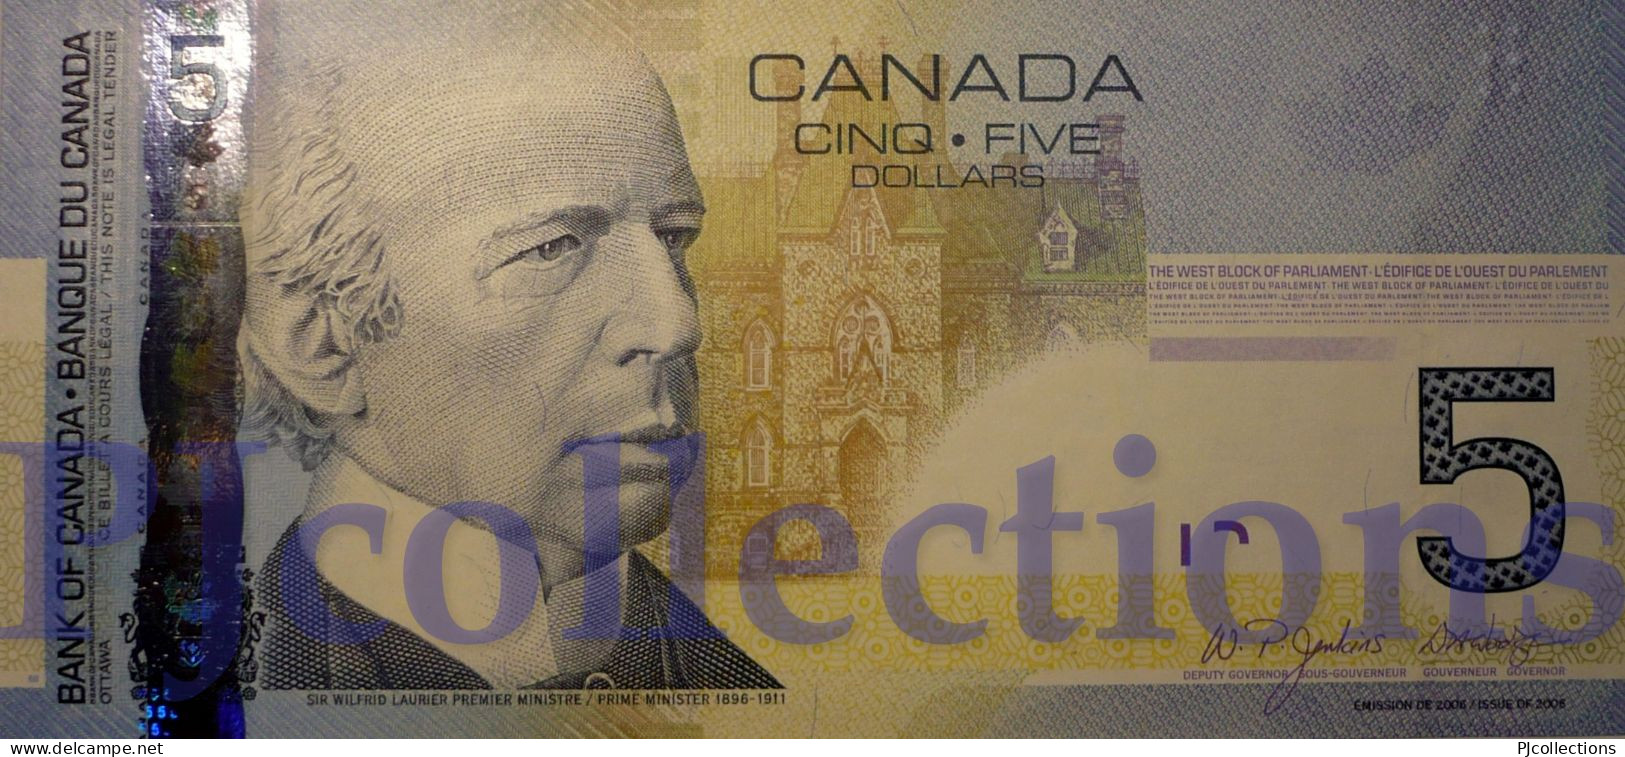 CANADA 5 DOLLARS 2006 PICK 101Aa UNC - Canada